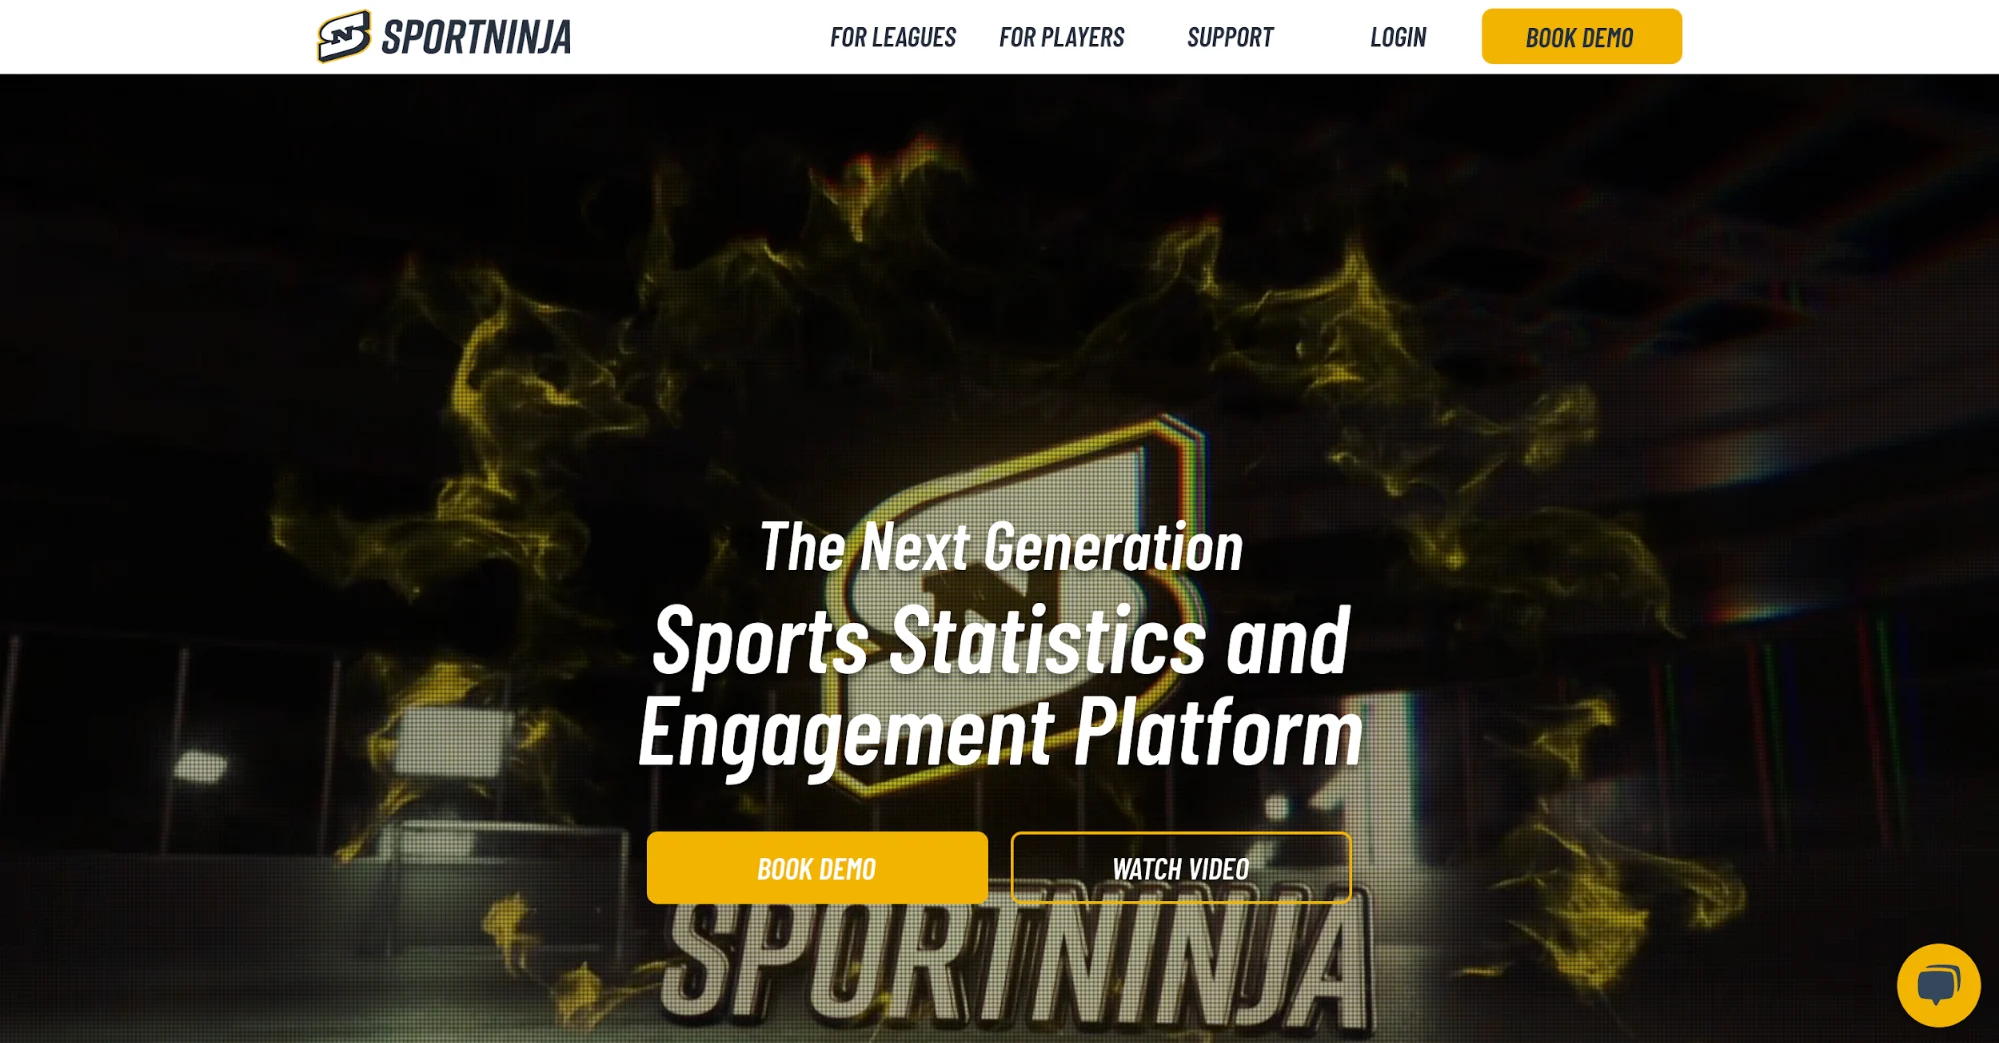 sport ninja league management software